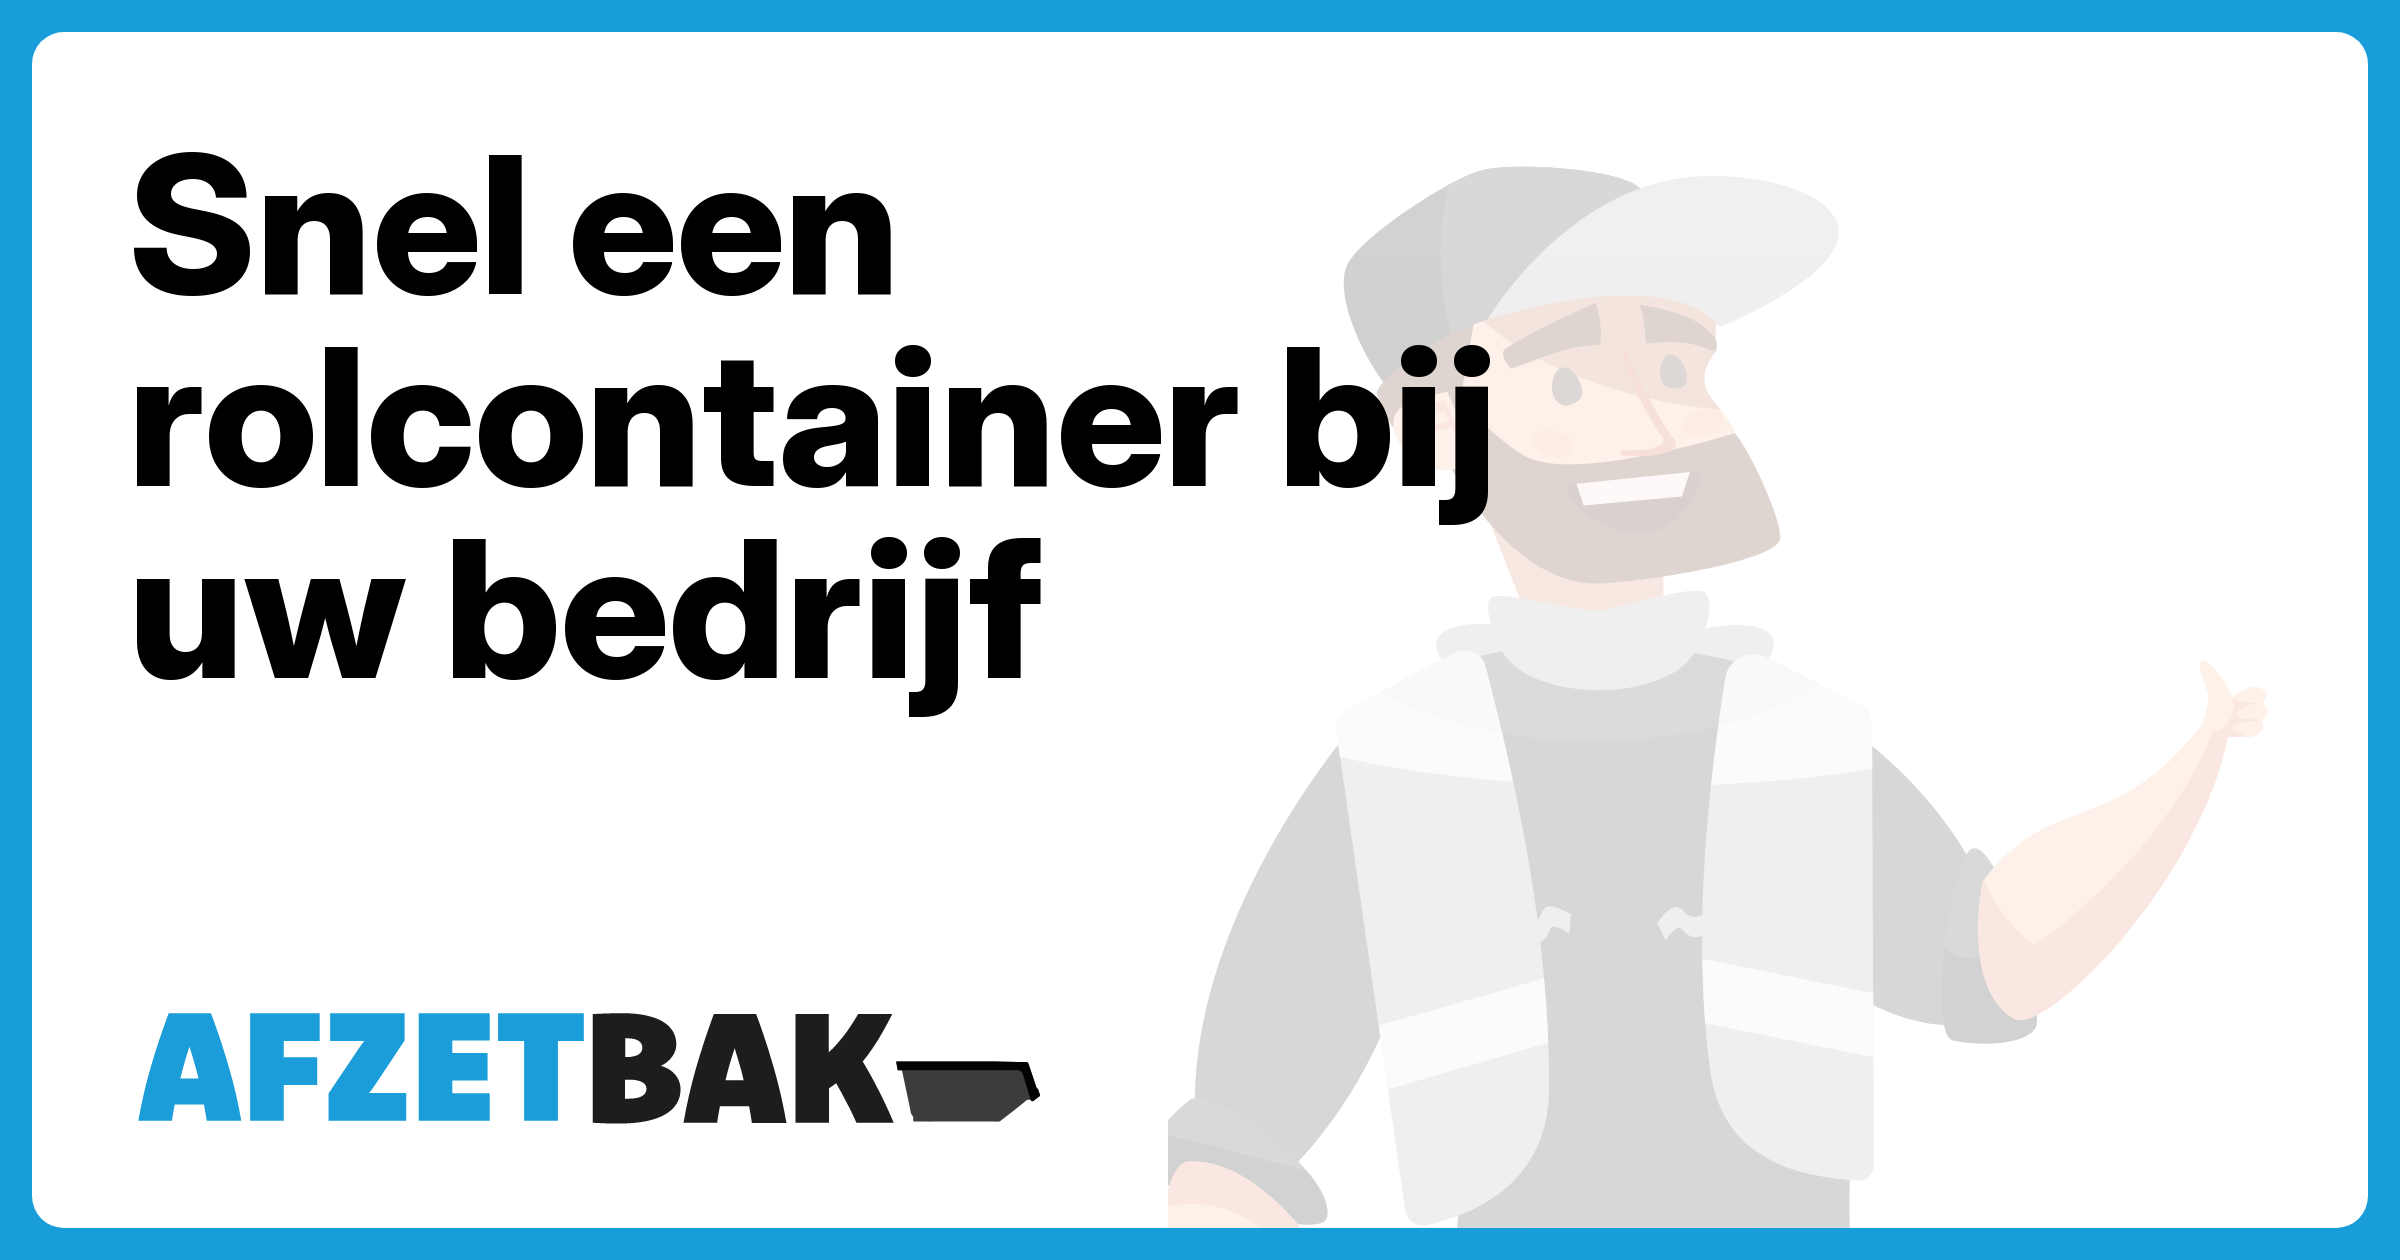 Snel een rolcontainer bij uw bedrijf - Afzetbak.nl